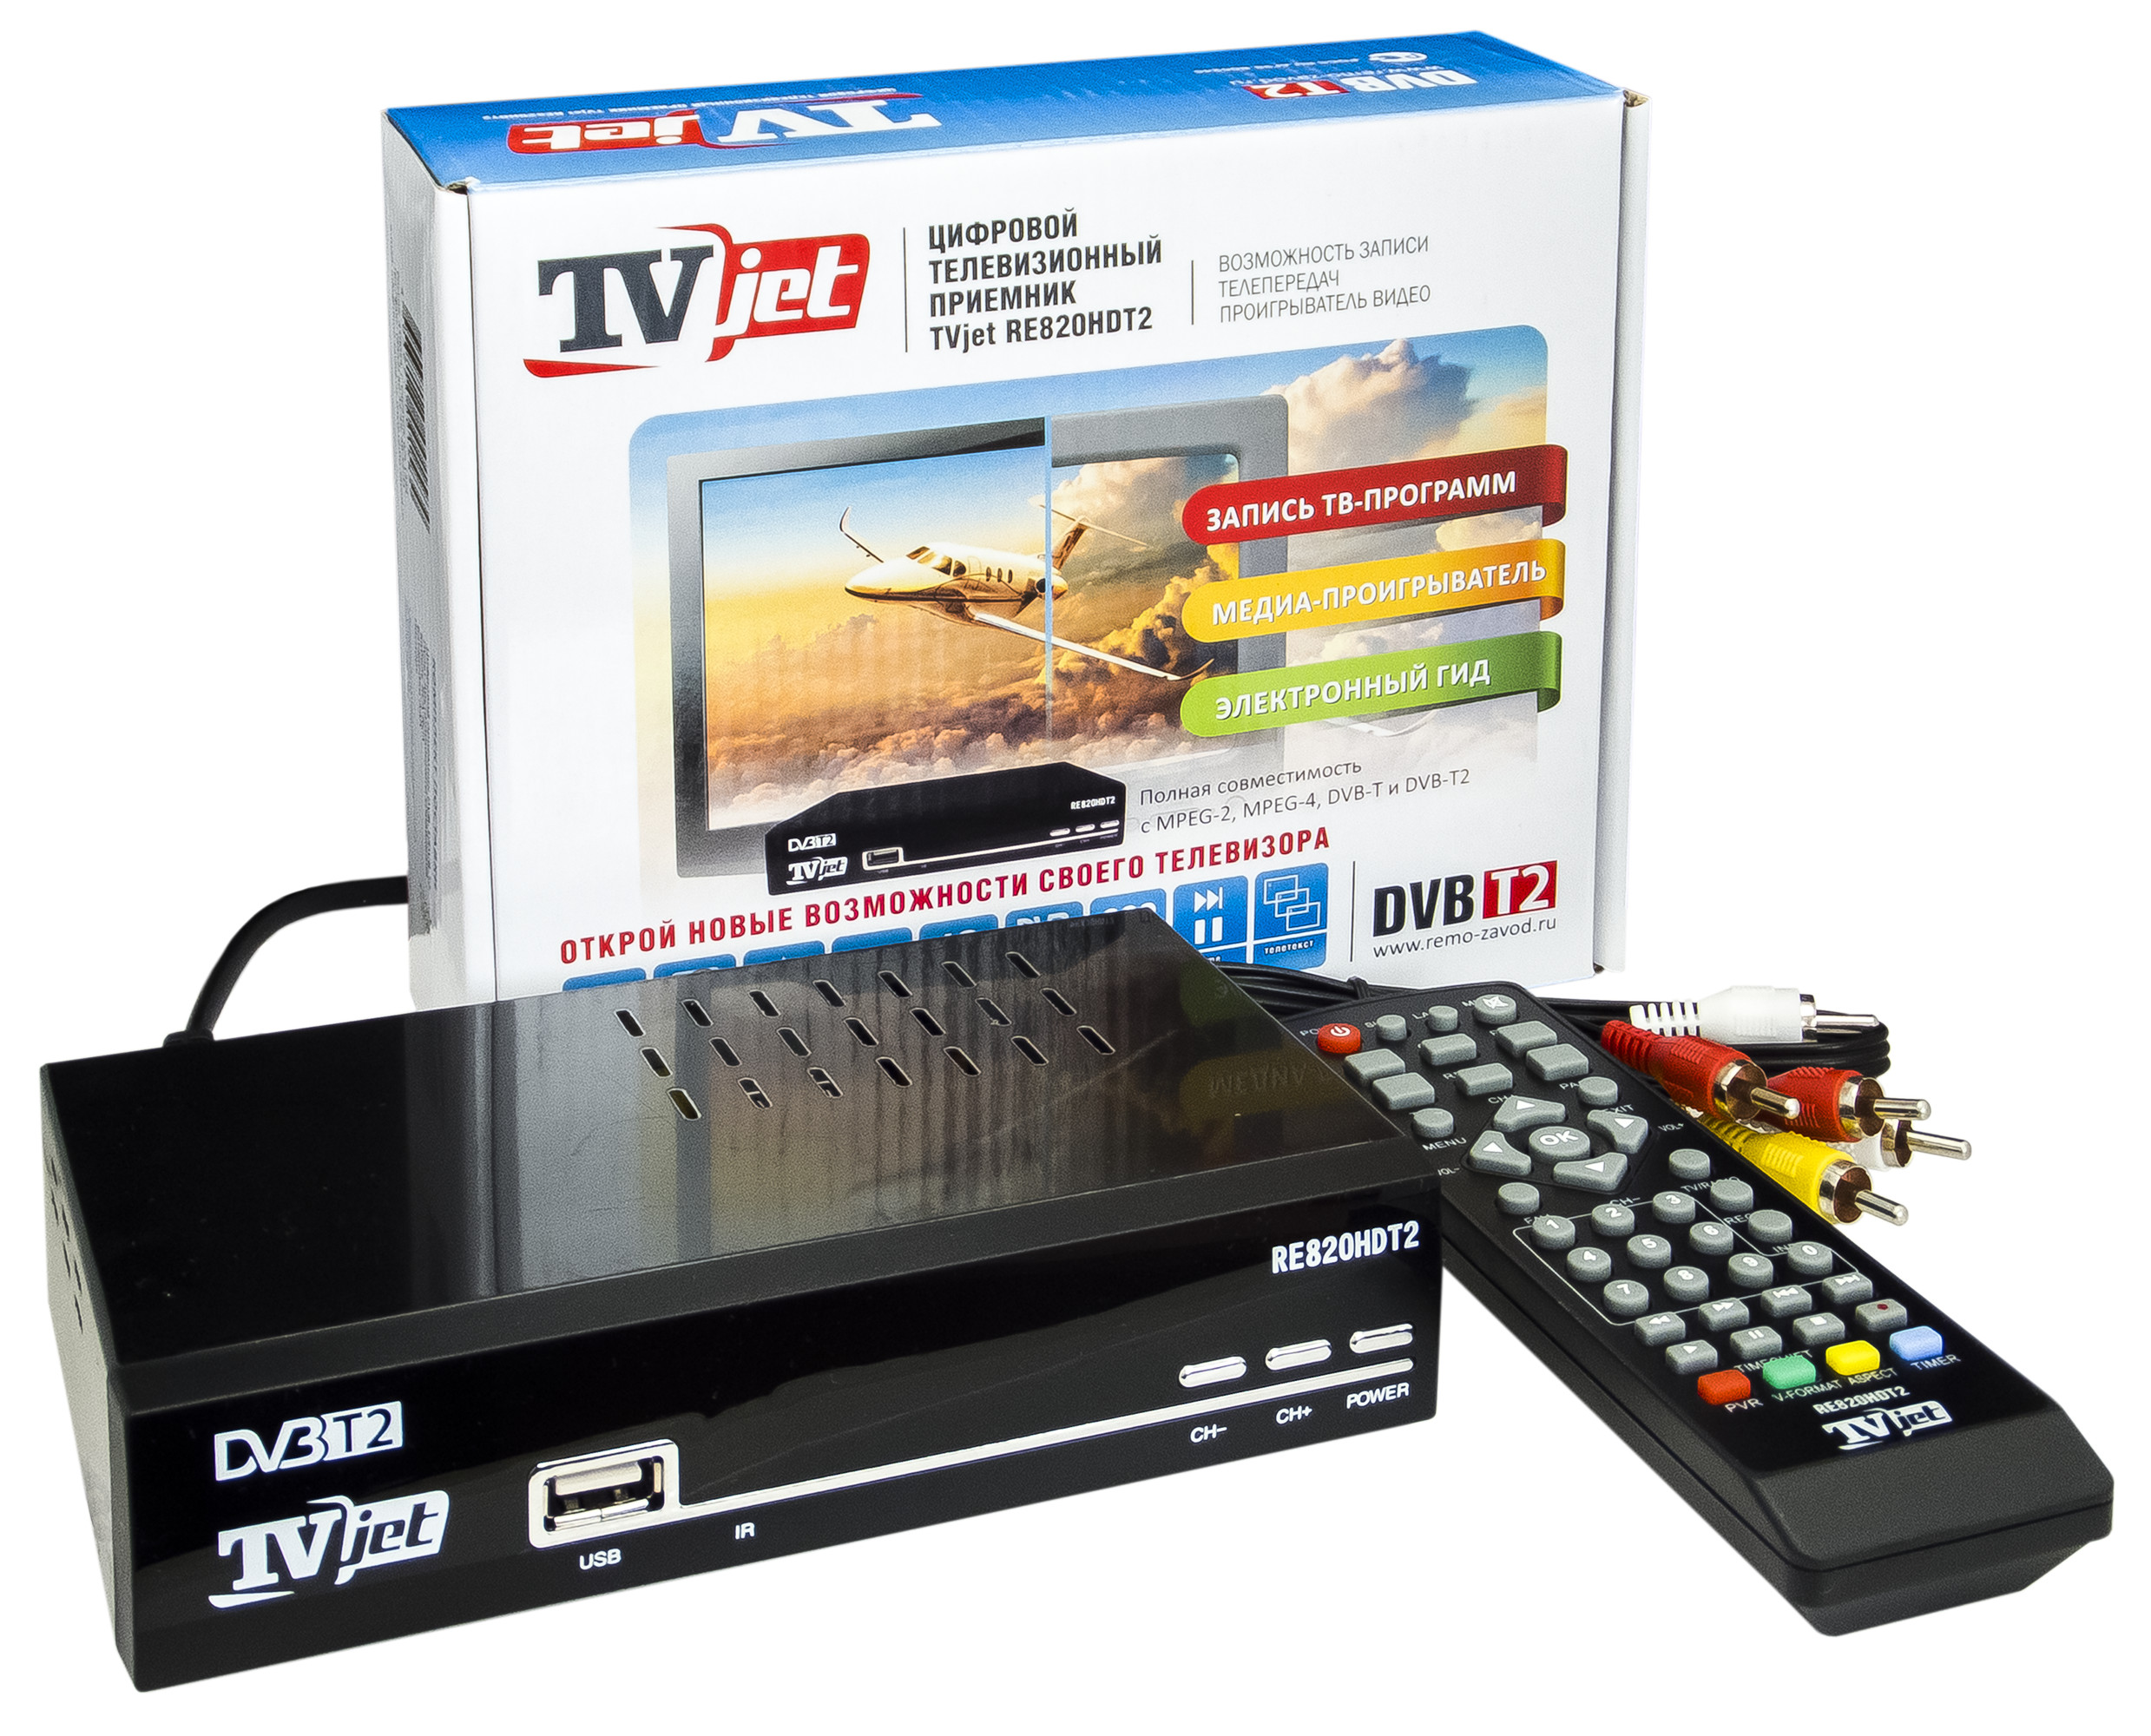 Купить приставку для антенны телевизора. TV-тюнер РЭМО TVJET re820hdt2. Приемник цифровой MPEG DVB t2. Цифровая приставка DVB-t2. Приставка с антенной для цифрового ТВ Jet.